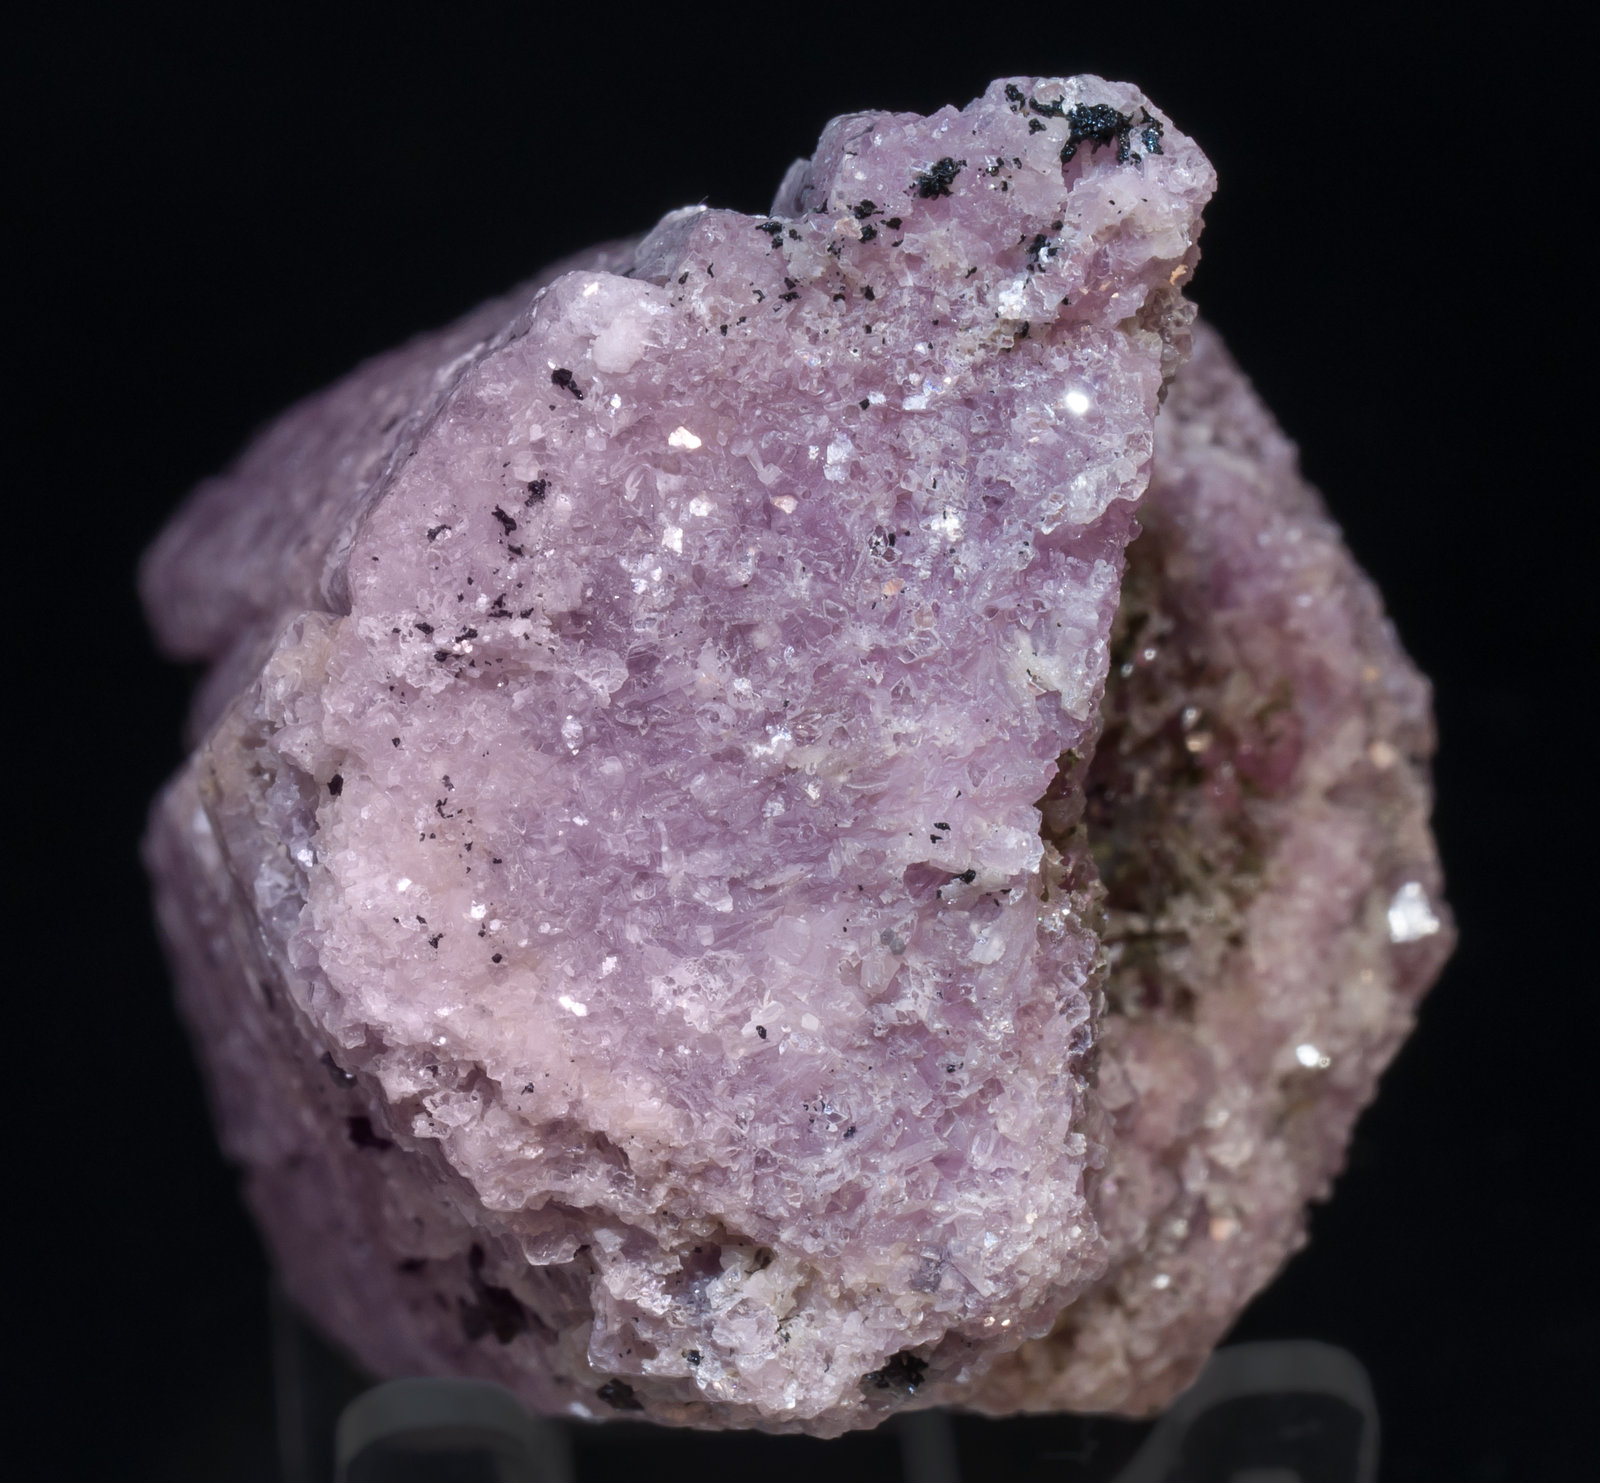 specimens/s_imagesAG3/Lepidolite-MR94AG3b.jpg